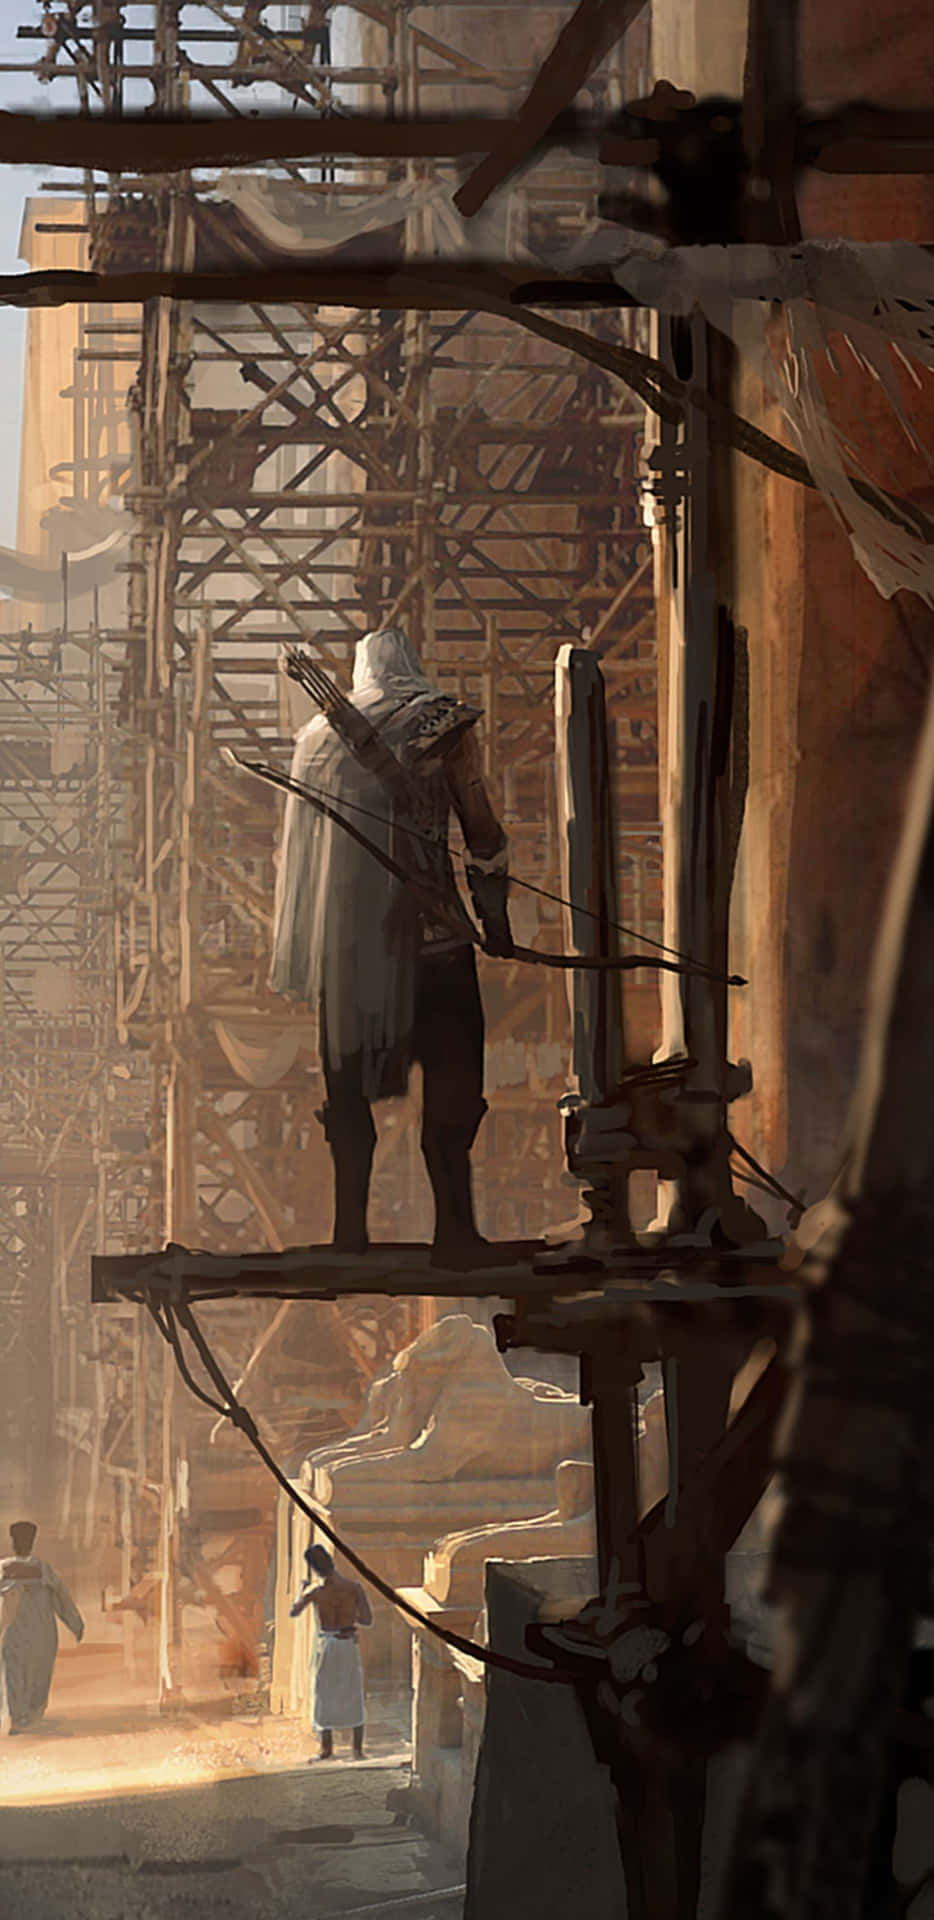 Fondode Pantalla De Assassin's Creed Origins Con La Portada Del Juego De Bayek En Pixel 3xl.